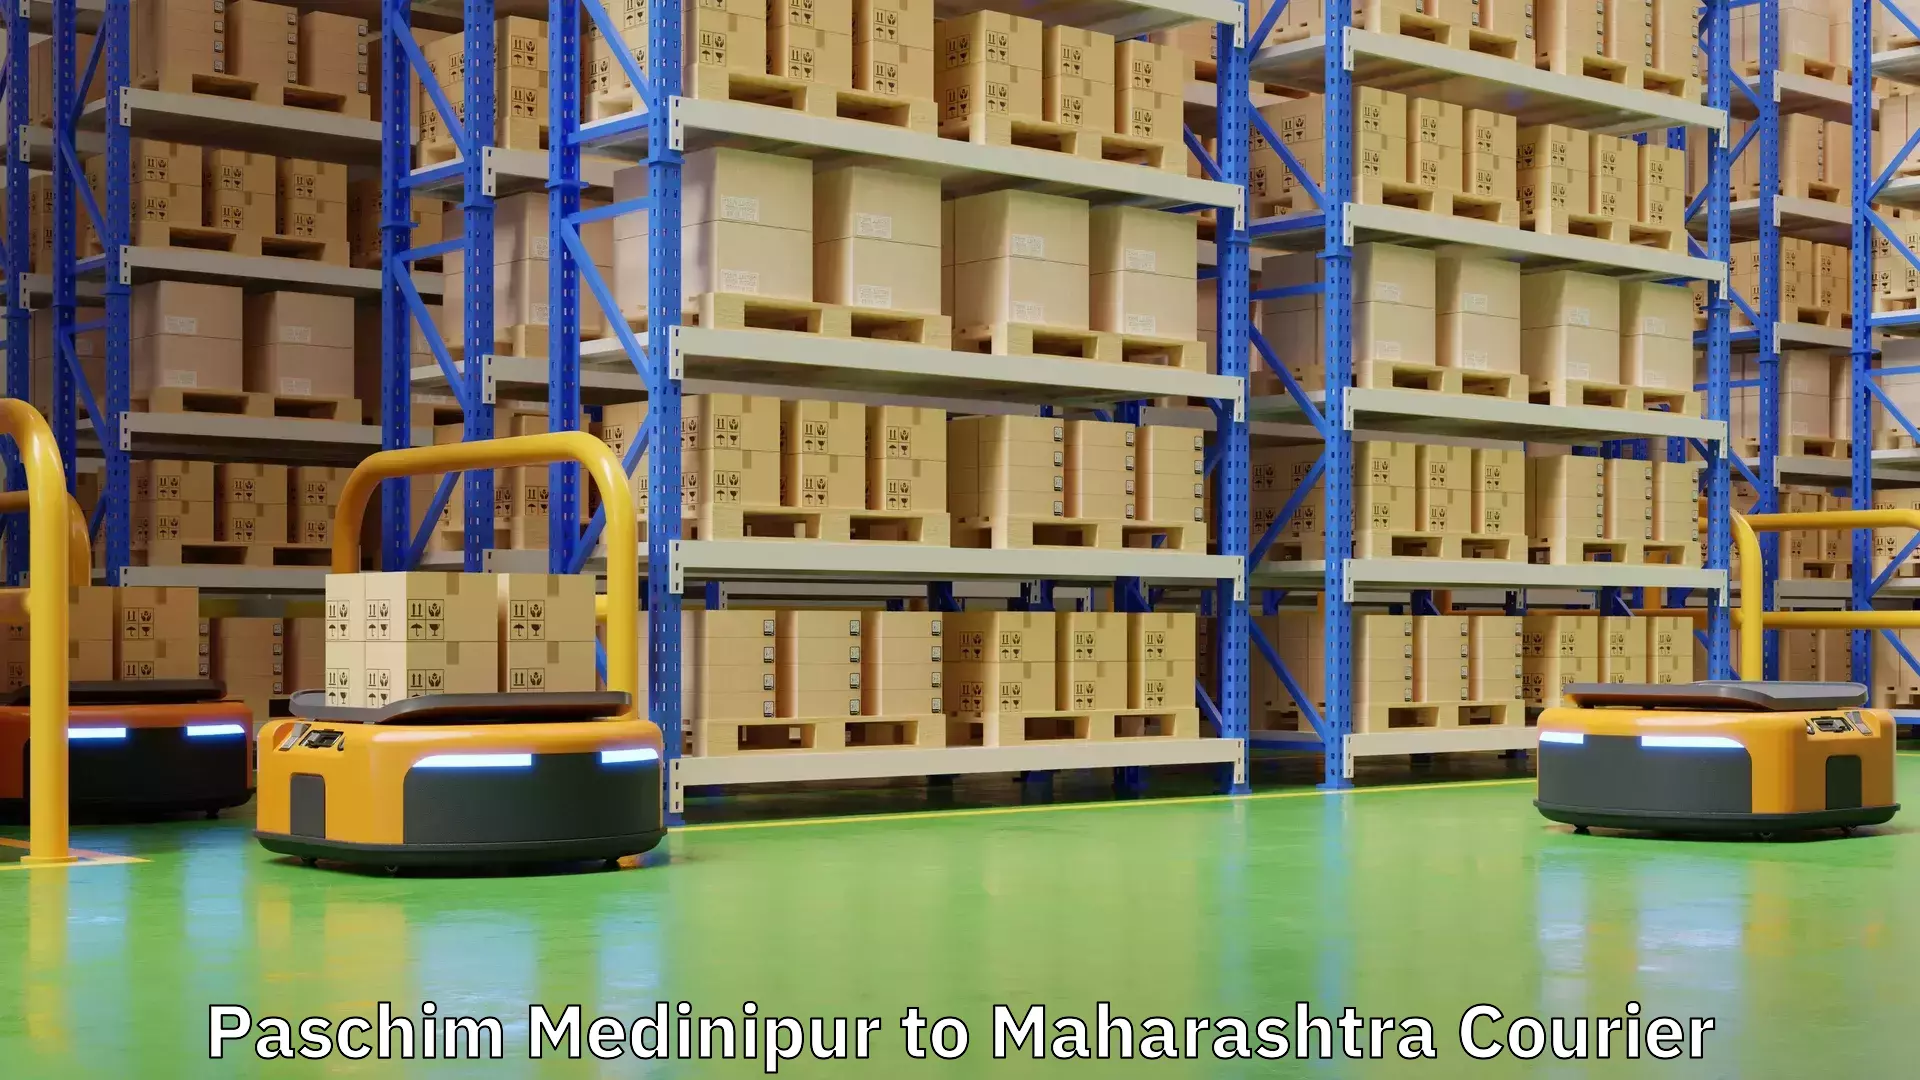 Digital courier platforms Paschim Medinipur to Maharashtra